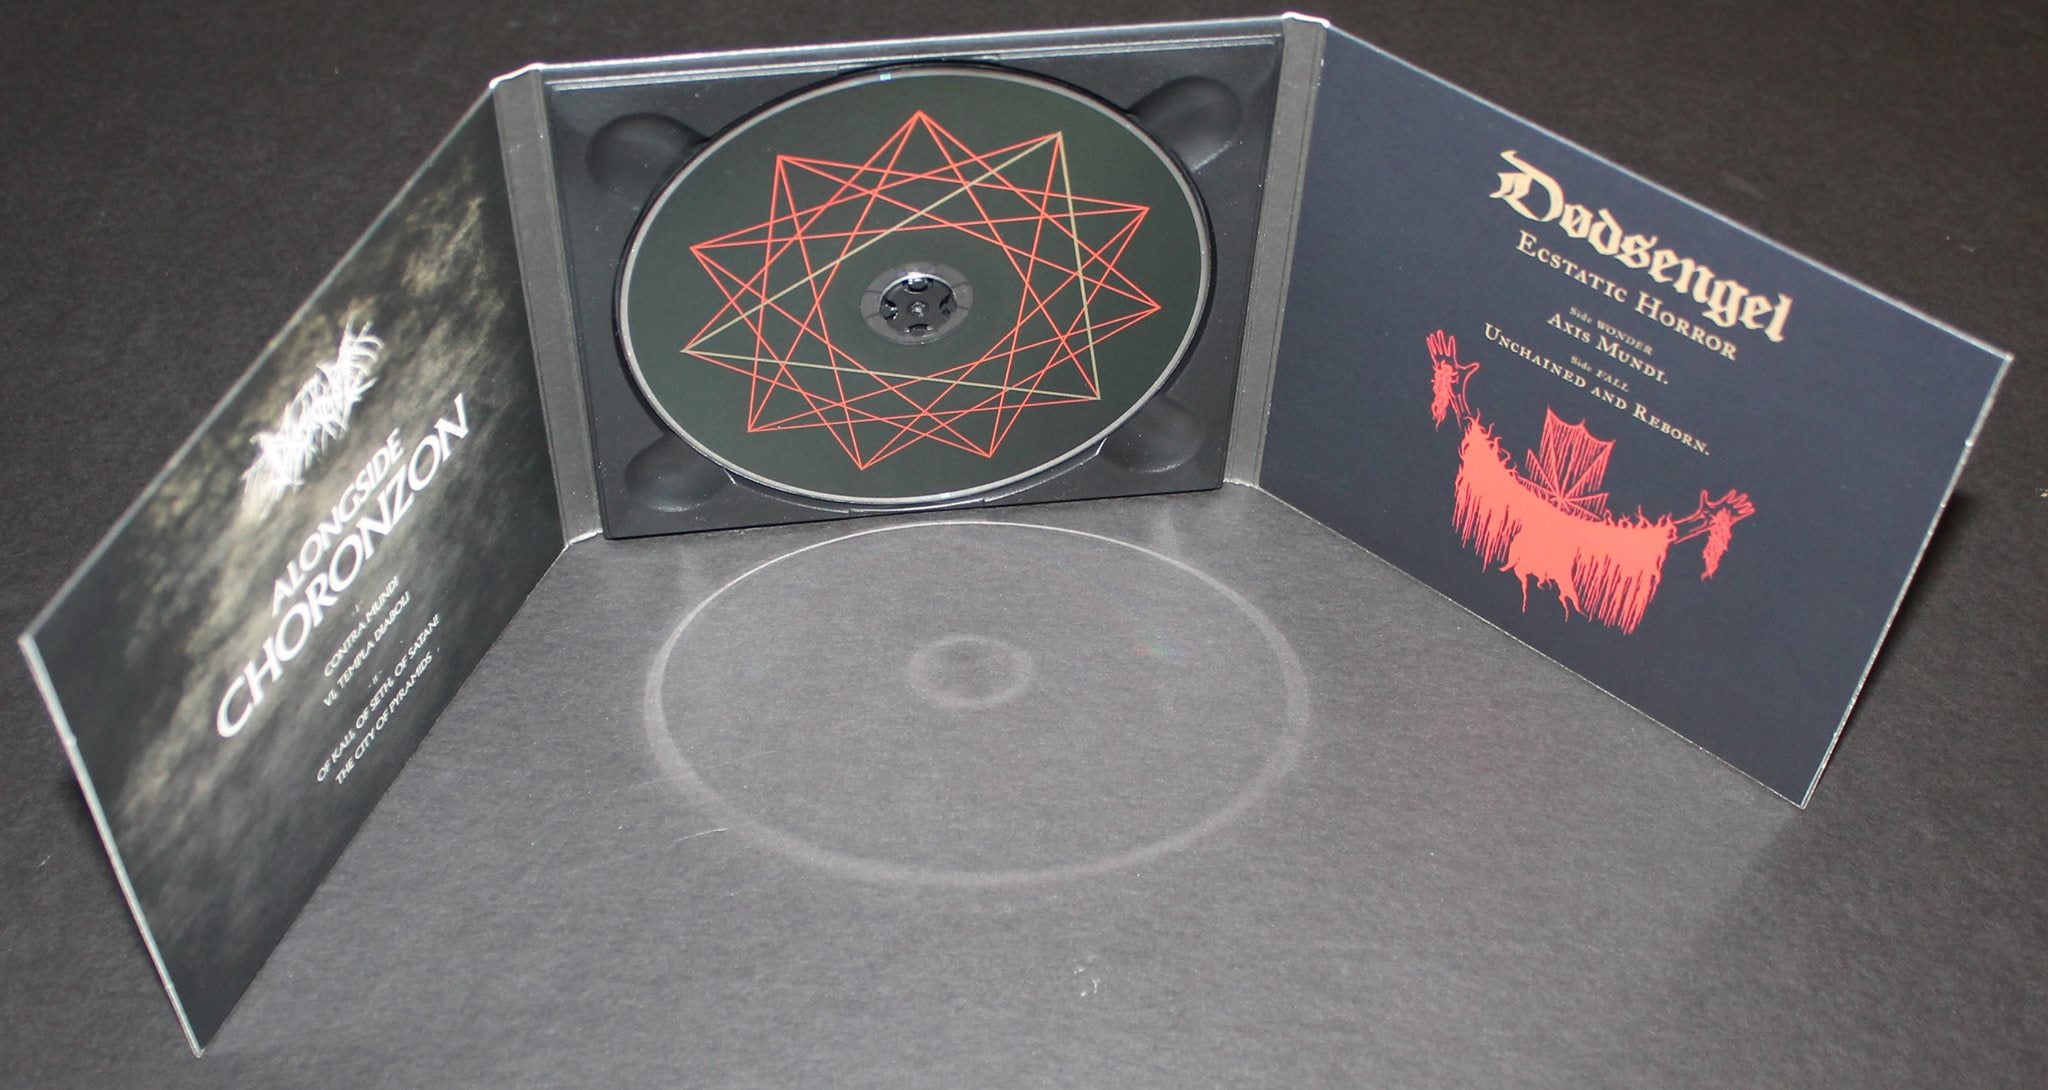 Dødsengel - Alongside Choronzon & Ecstatic Horror Digipack CD